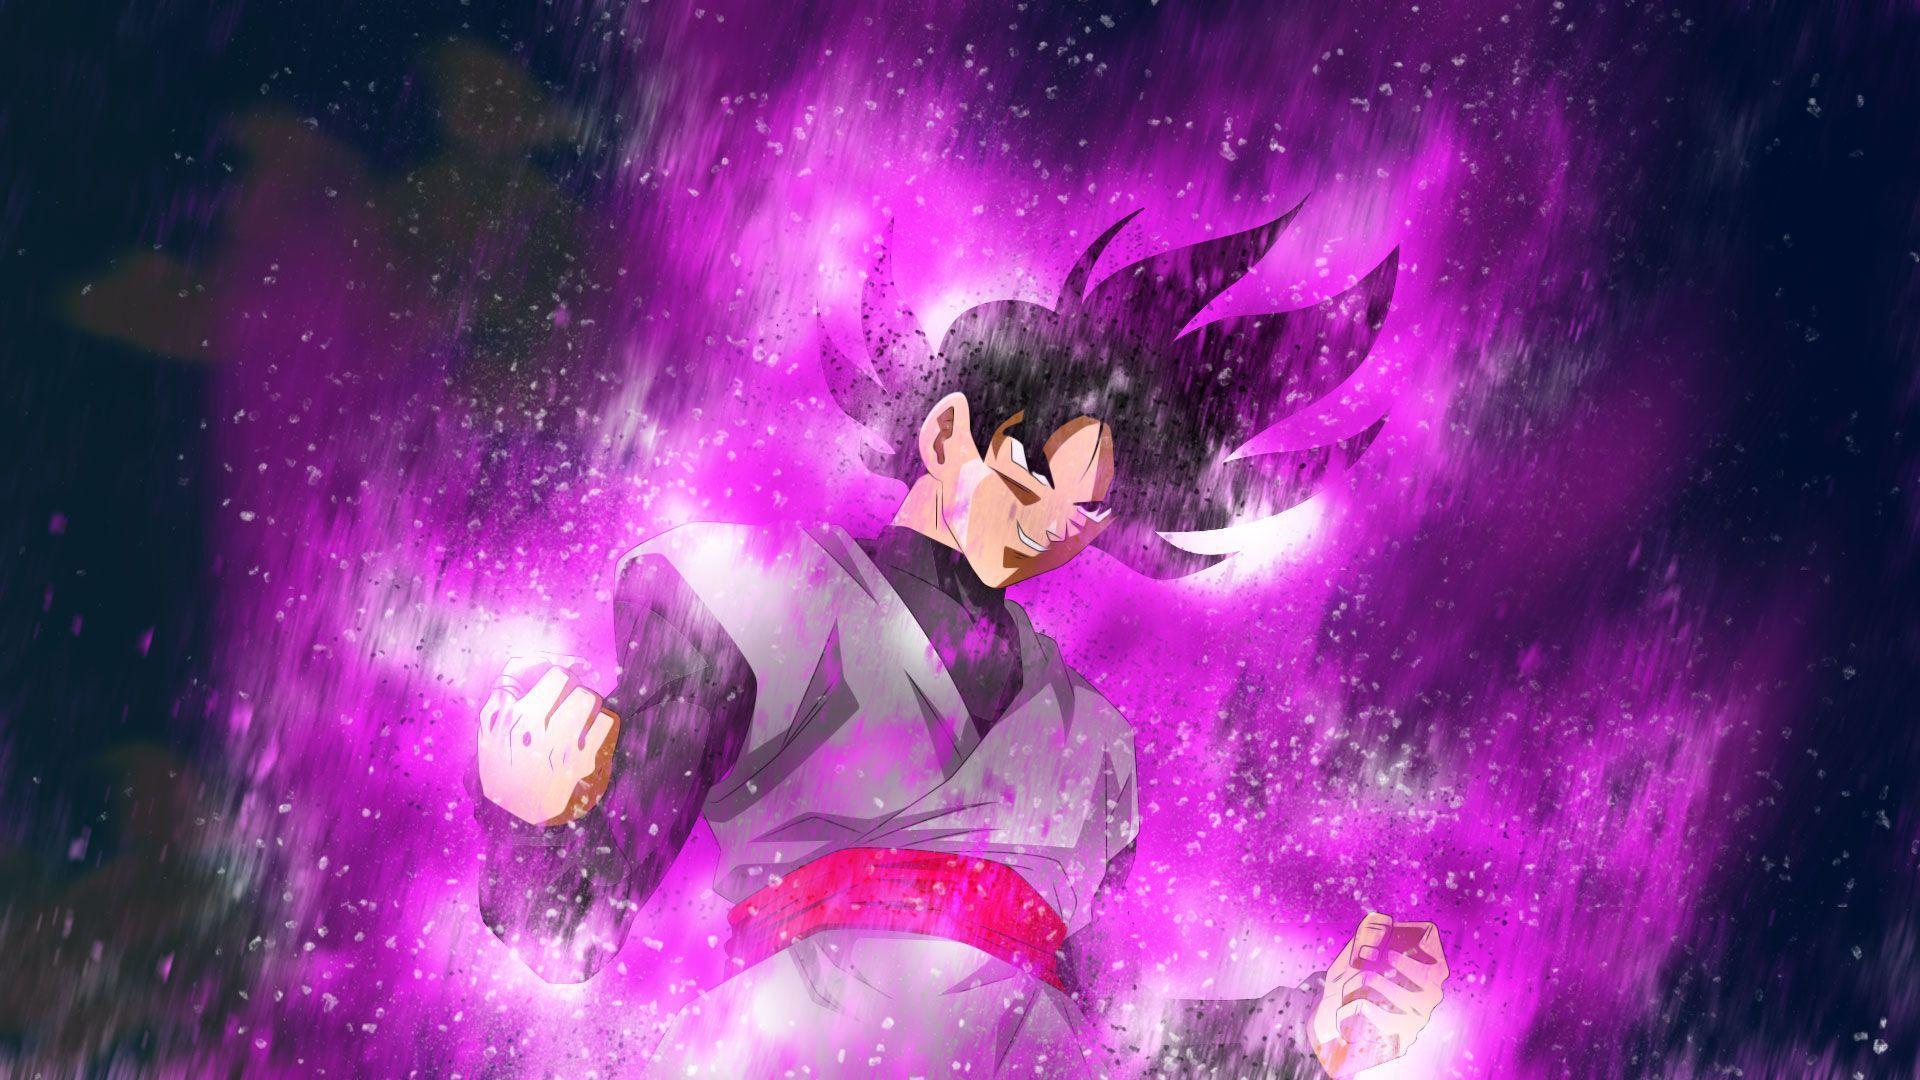 Black Goku dragon ball super Wallpapers